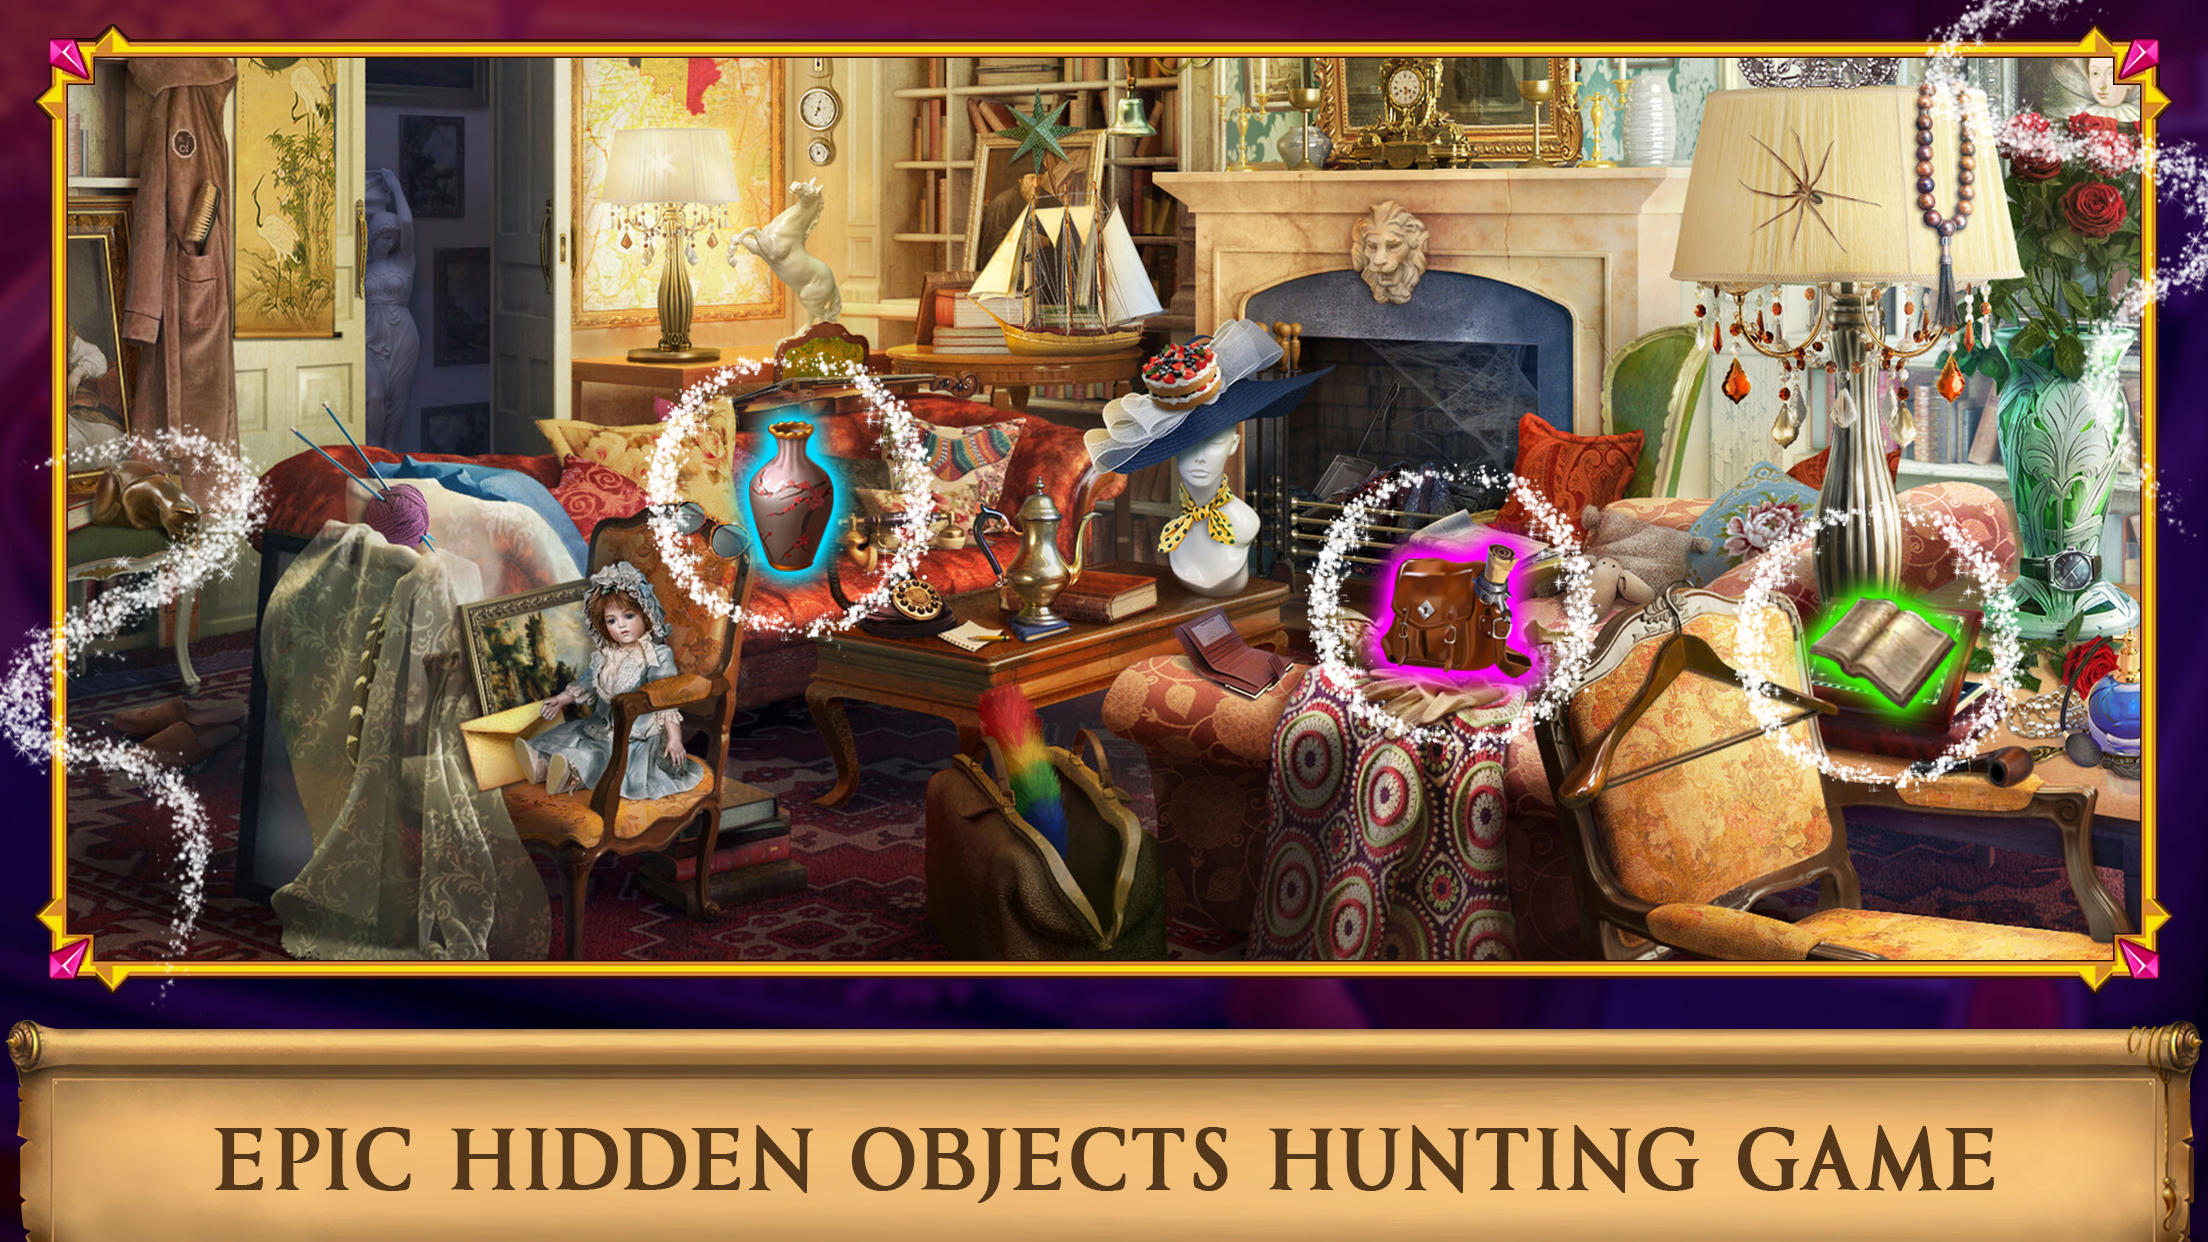 Hidden Objects: Brain Teaser - Jogos grátis, jogos online gratuitos 